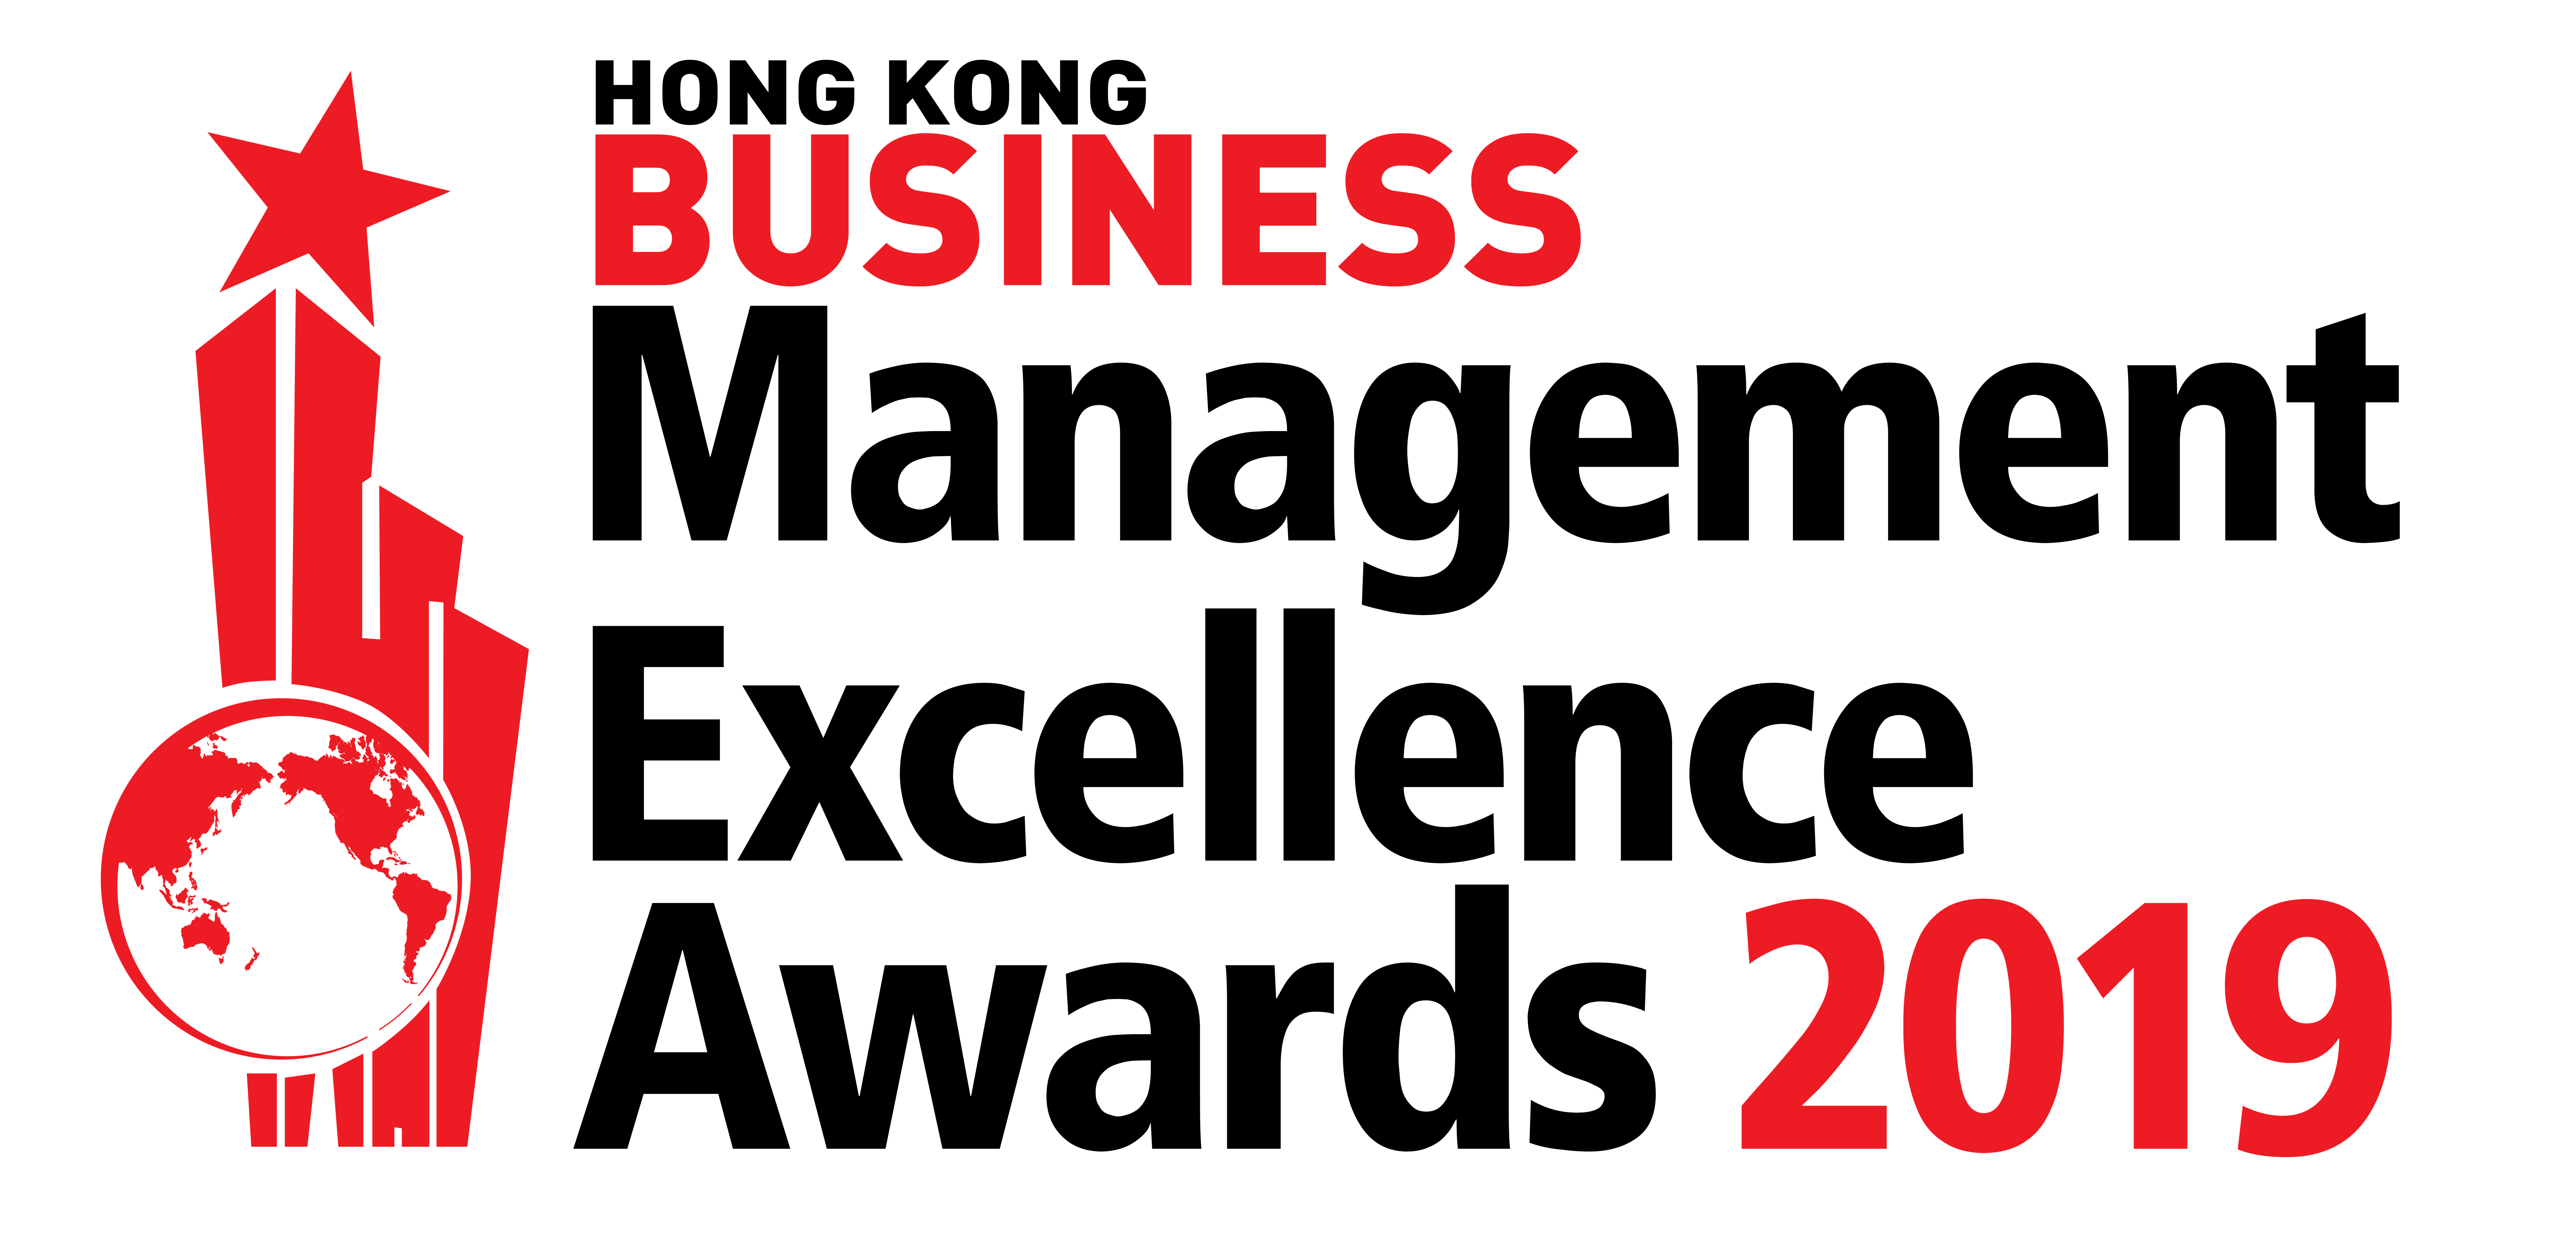 HKB Management Excellence Awards 2019 Logo (Black)